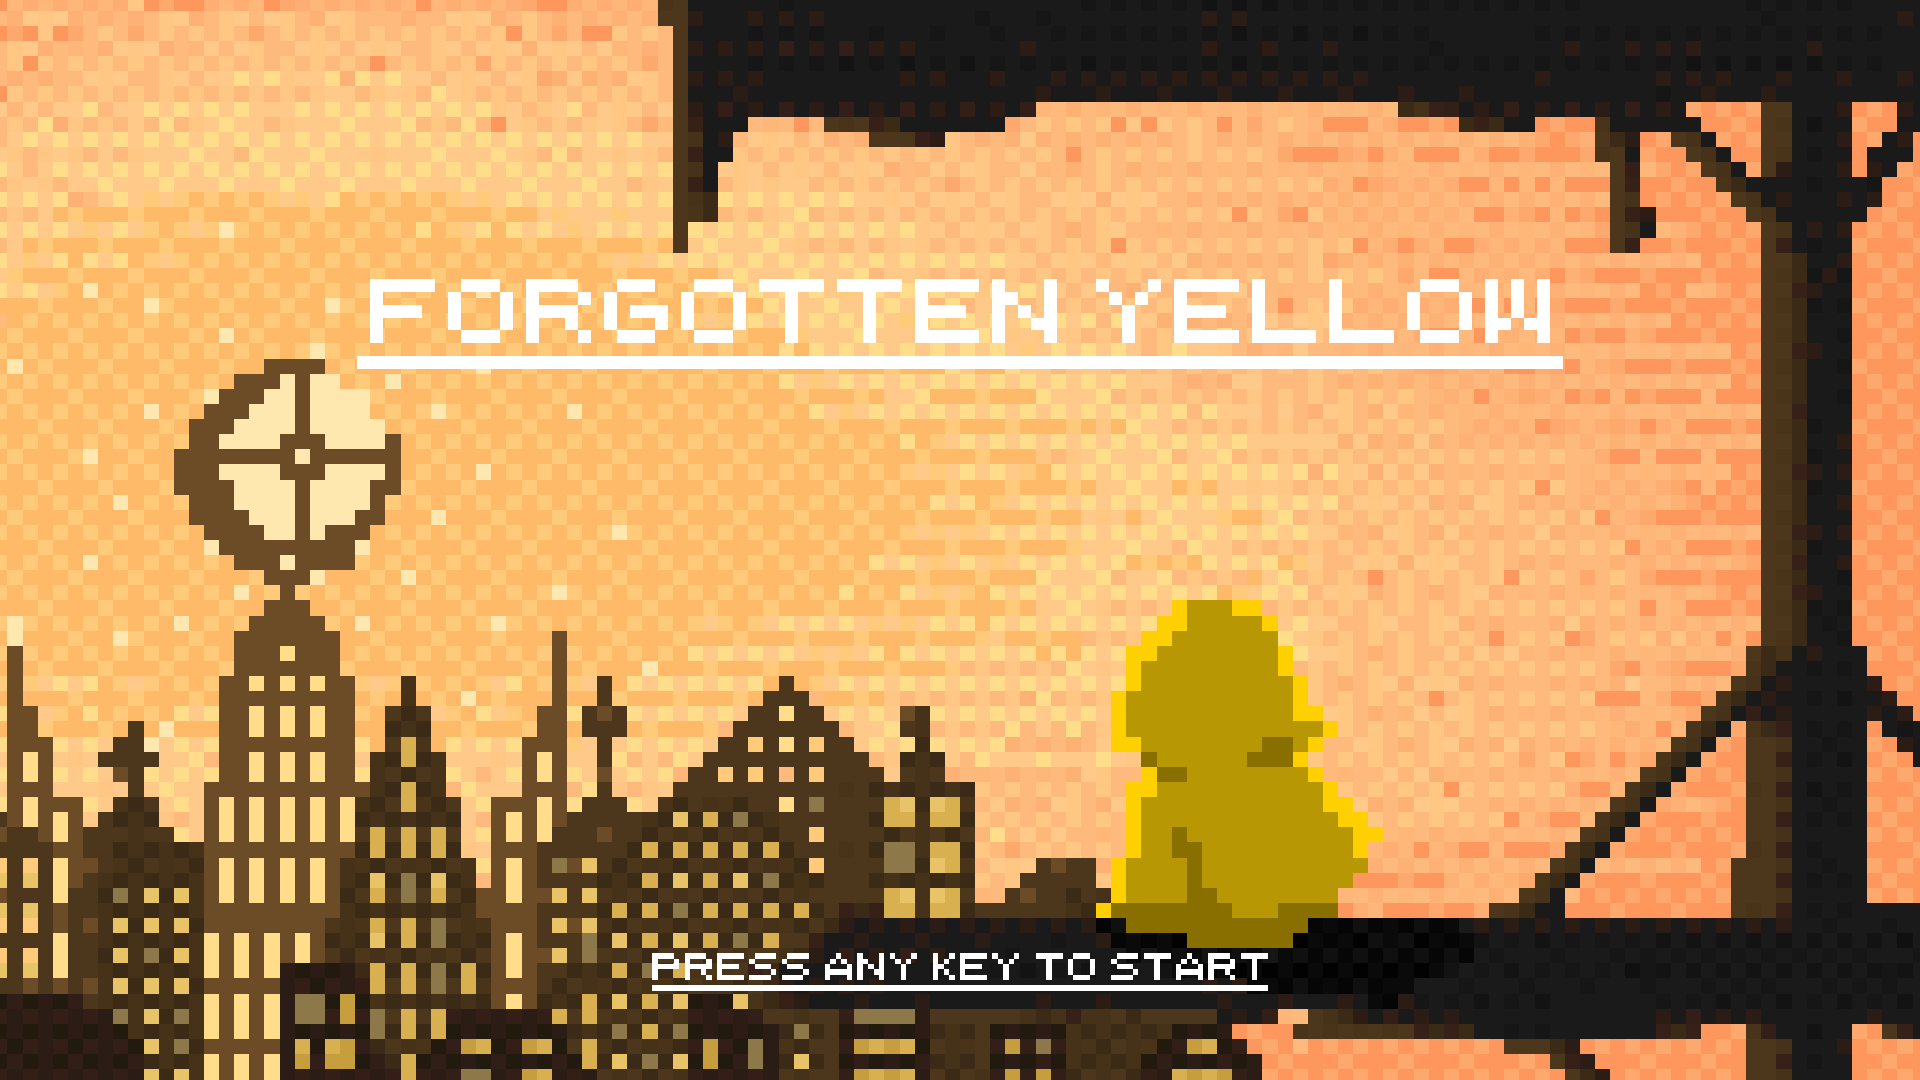 Forgotten Yellow